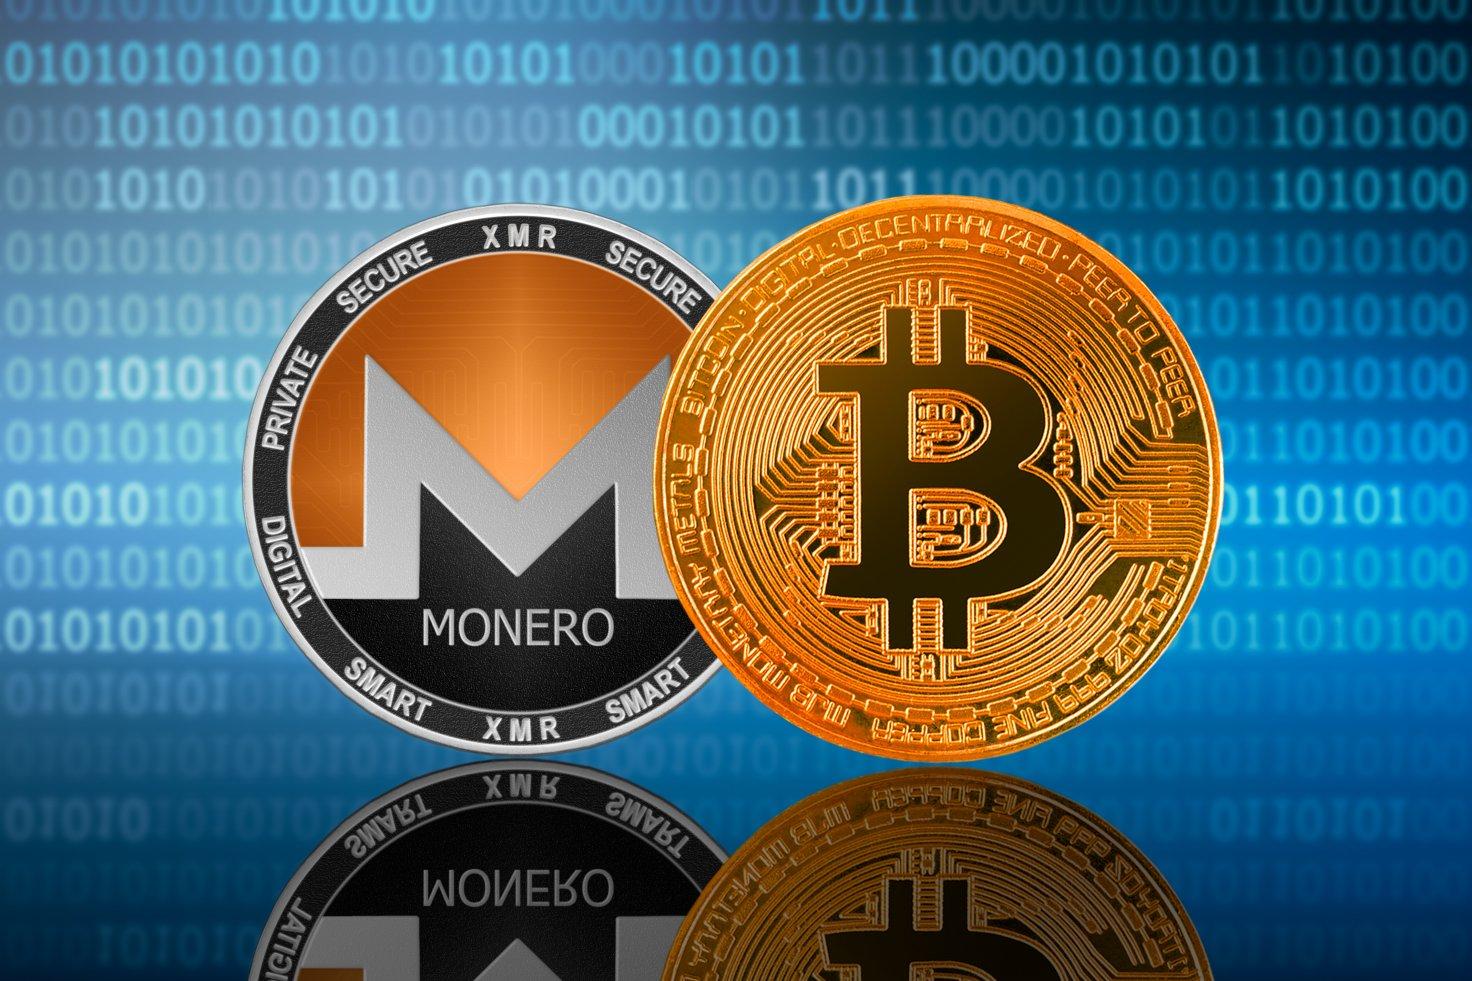 Monero'nun bu gizlilik odaklı özellikleri, kullanıcıların işlemlerini ve hesap bakiyelerini tamamen gizli tutarak, Monero'nun takip edilemez ve anonim bir kripto para birimi olmasını sağlar.